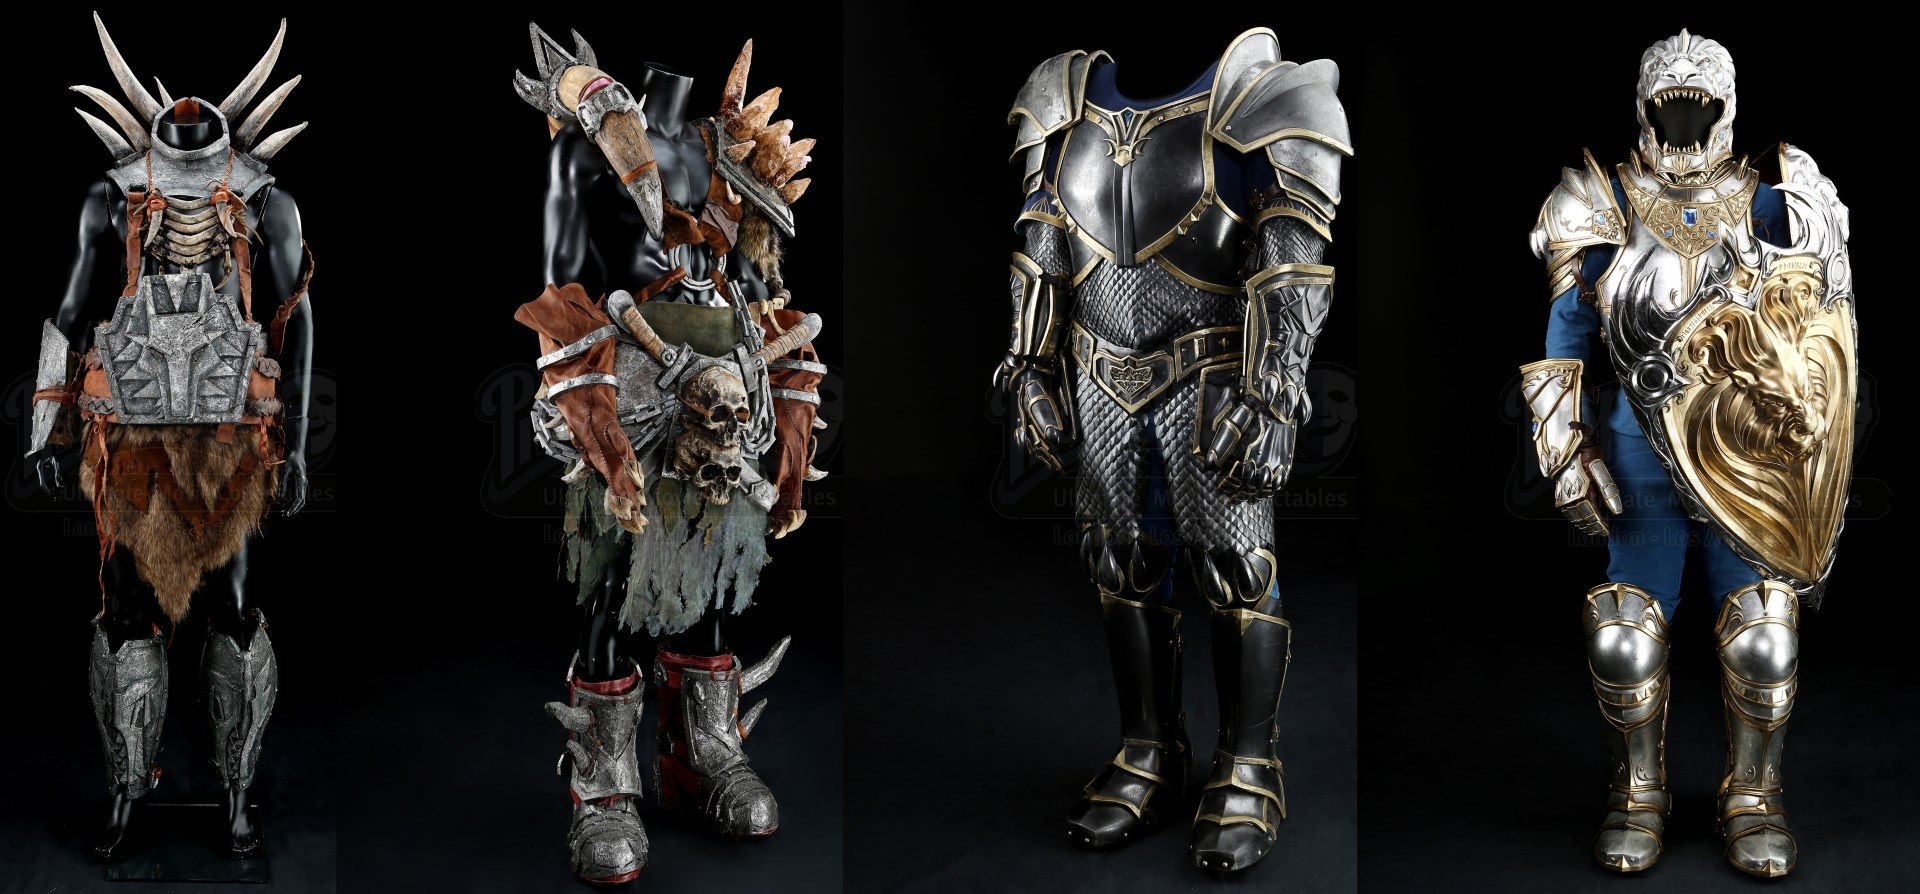 Σε δημοπρασία το armor και τα όπλα της ταινίας Warcraft